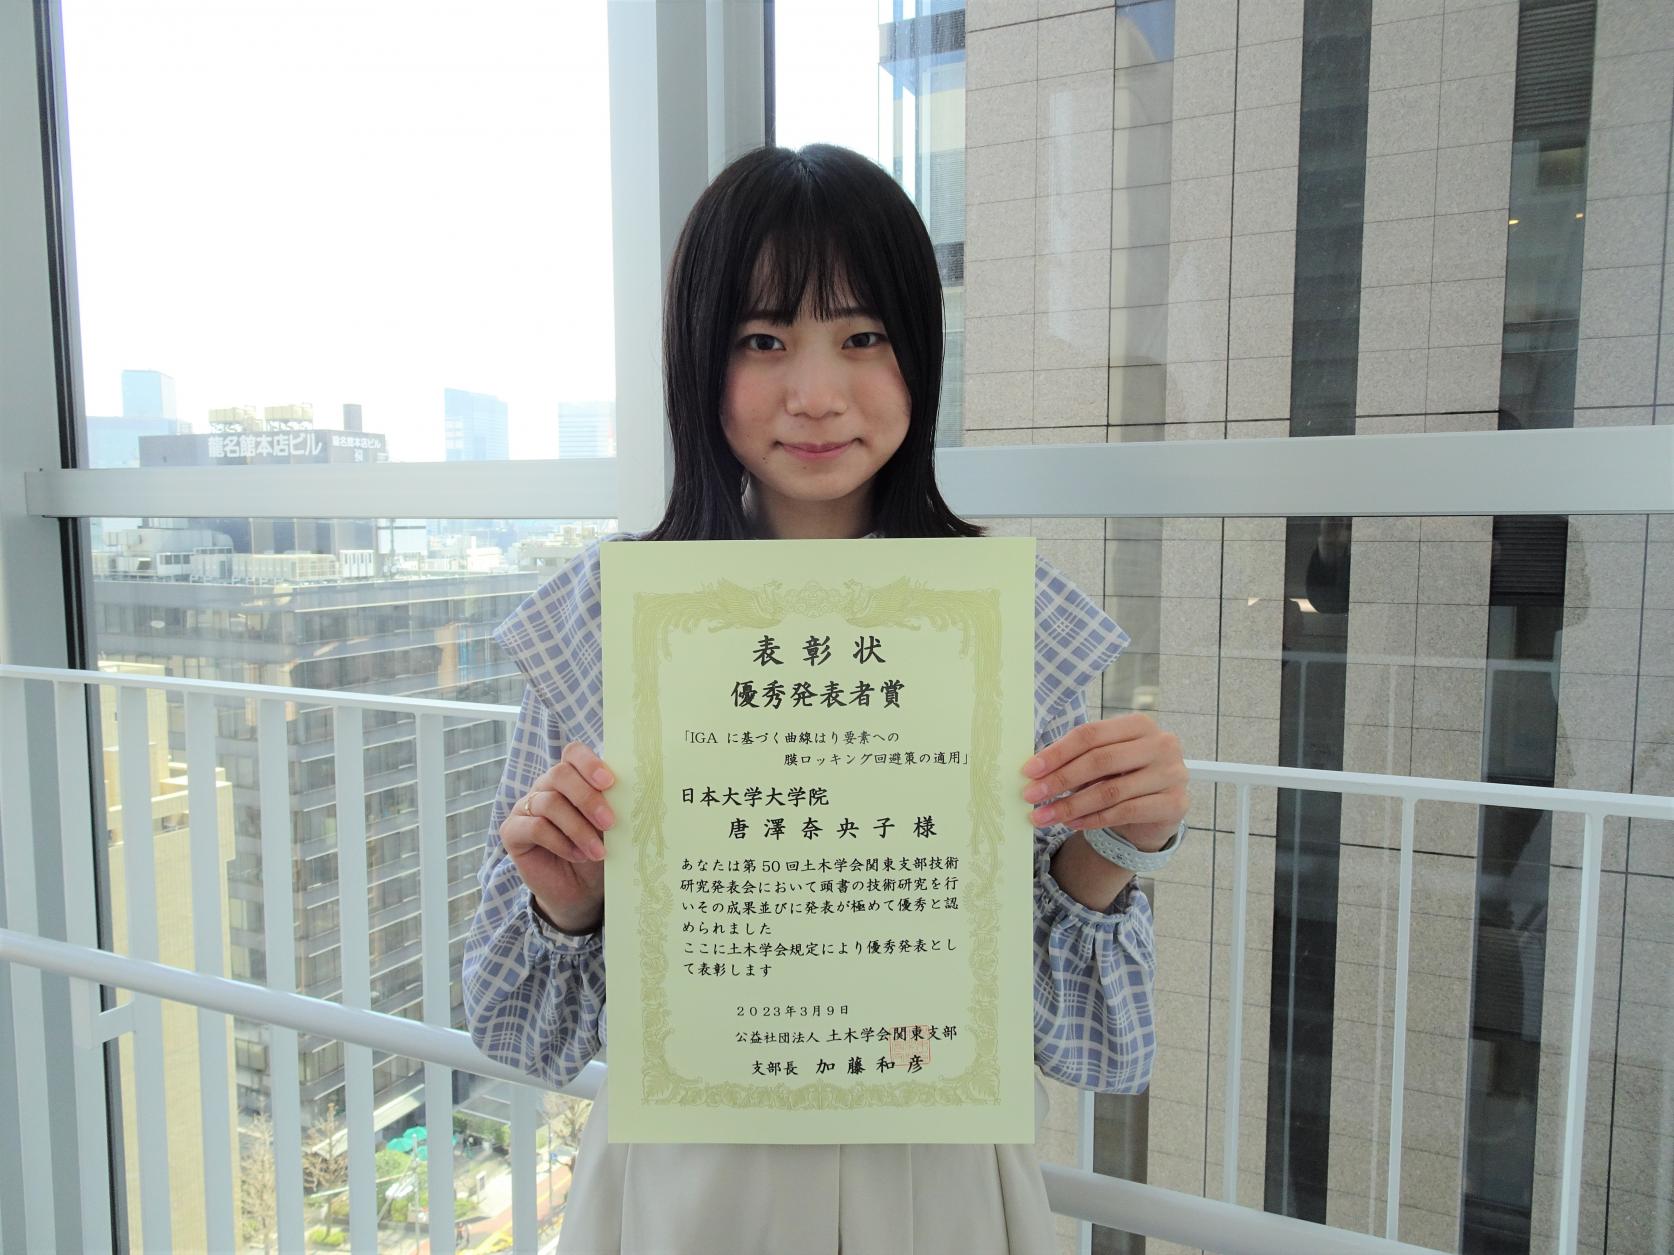 土木工学専攻2年の唐澤奈央子さんが、土木学会第50回関東支部技術研究発表会において、優秀発表者賞を受賞しました。